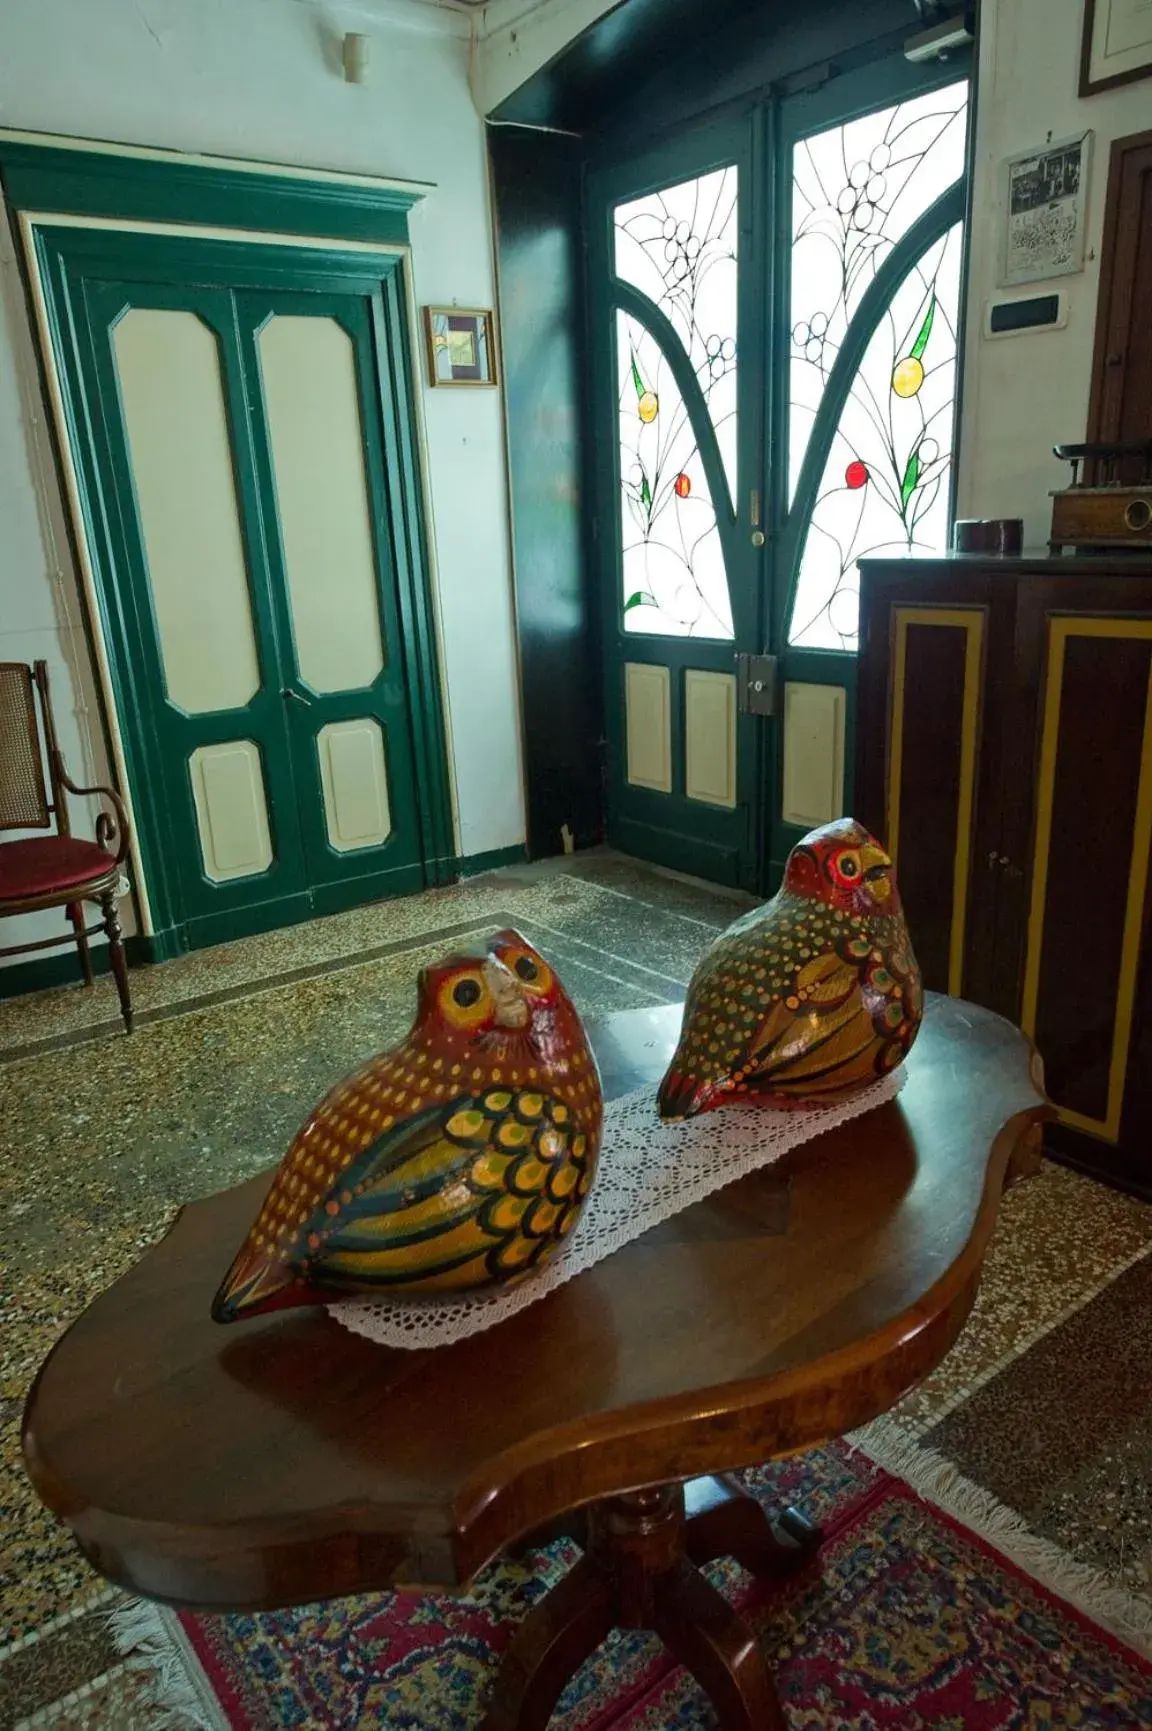 Decorative detail in Albergo Cavallino